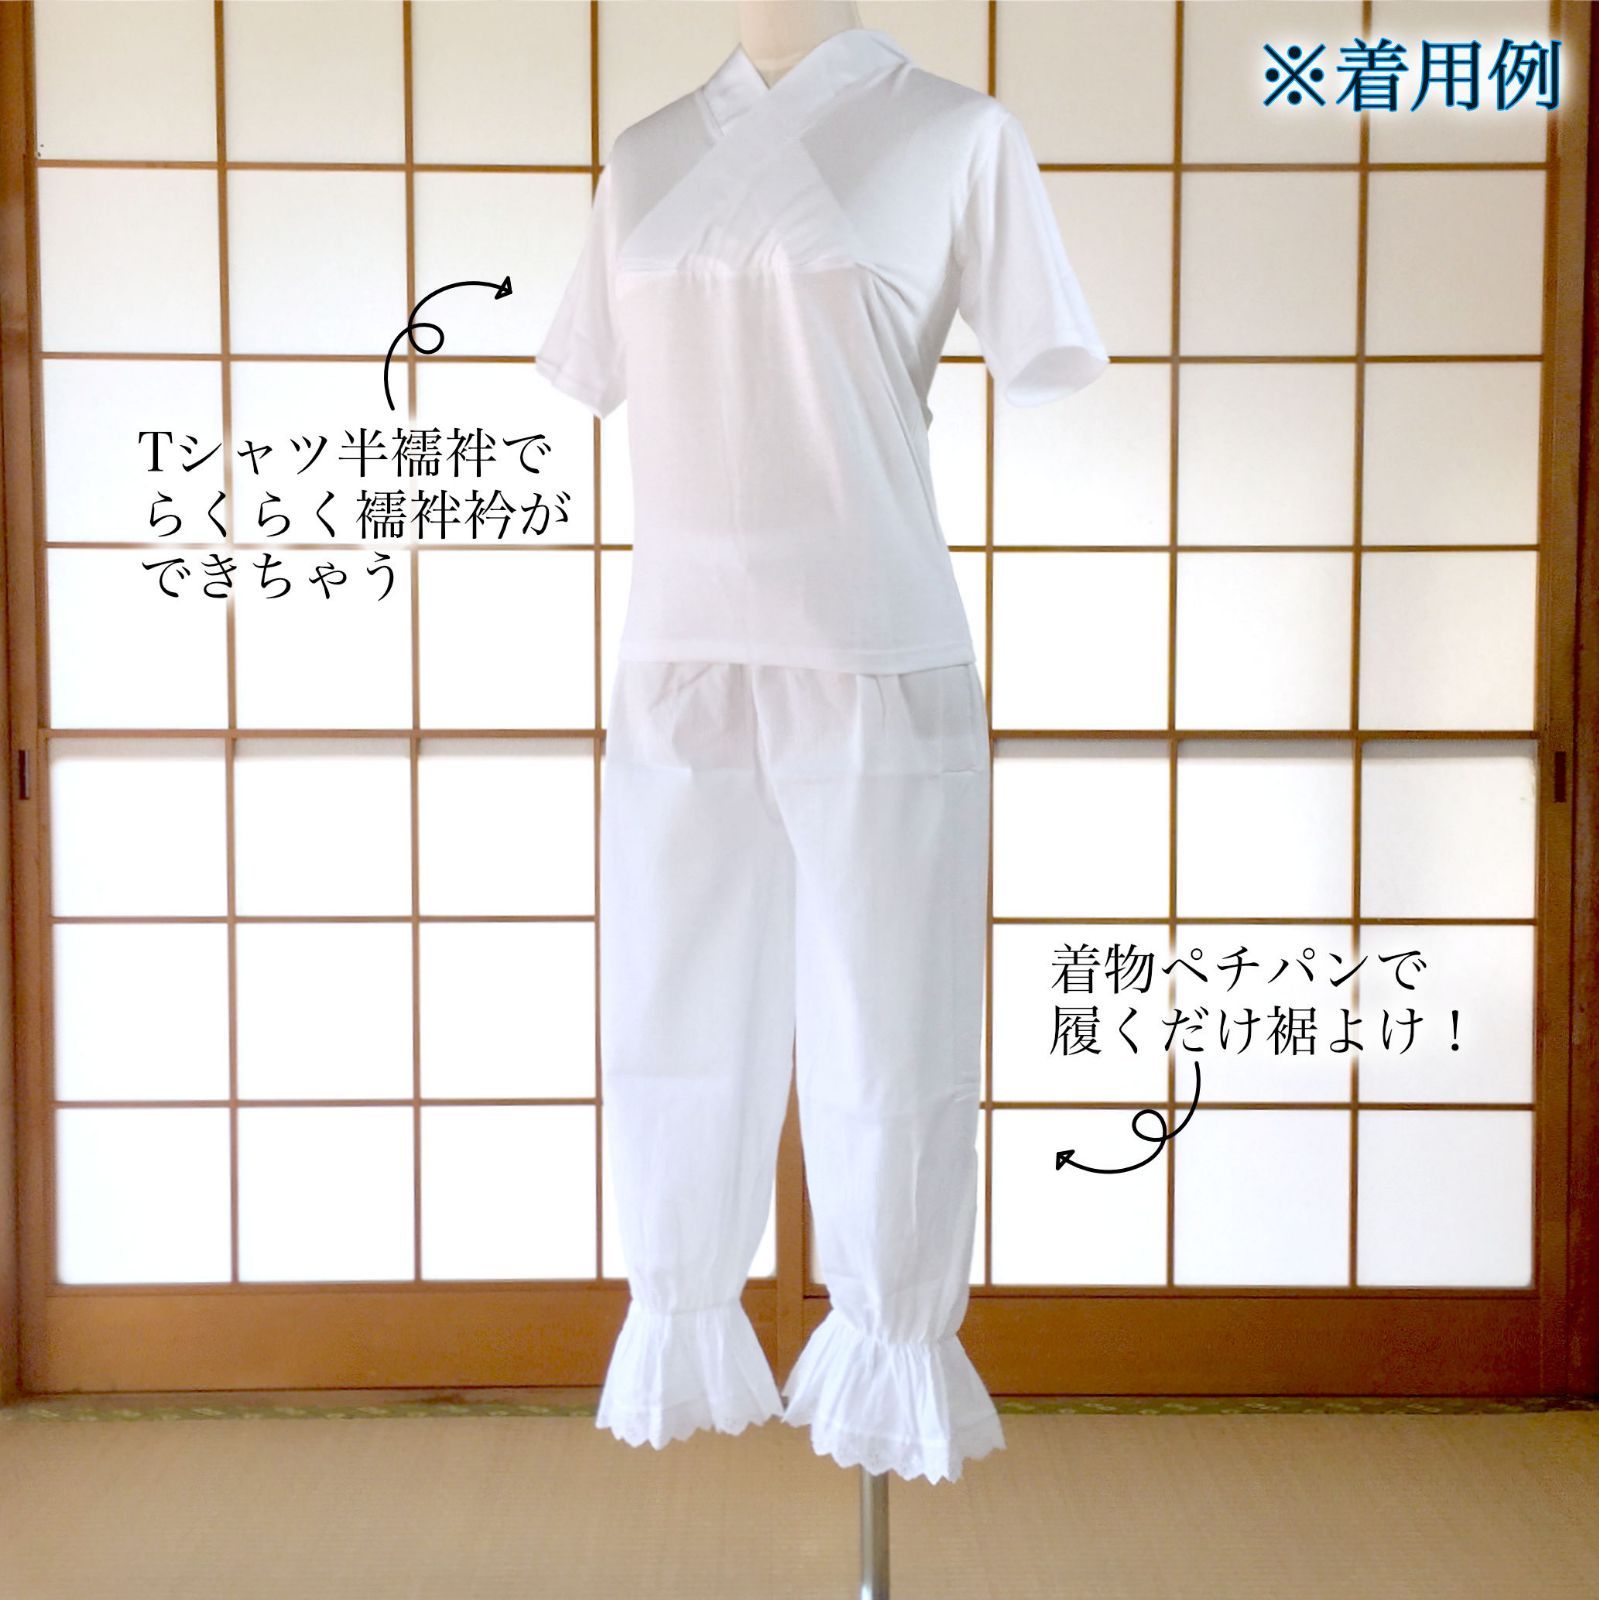 【新品 】着物ペチパンツ パンツ型 裾よけ Mサイズ 着物インナー 日本製 kimonolove